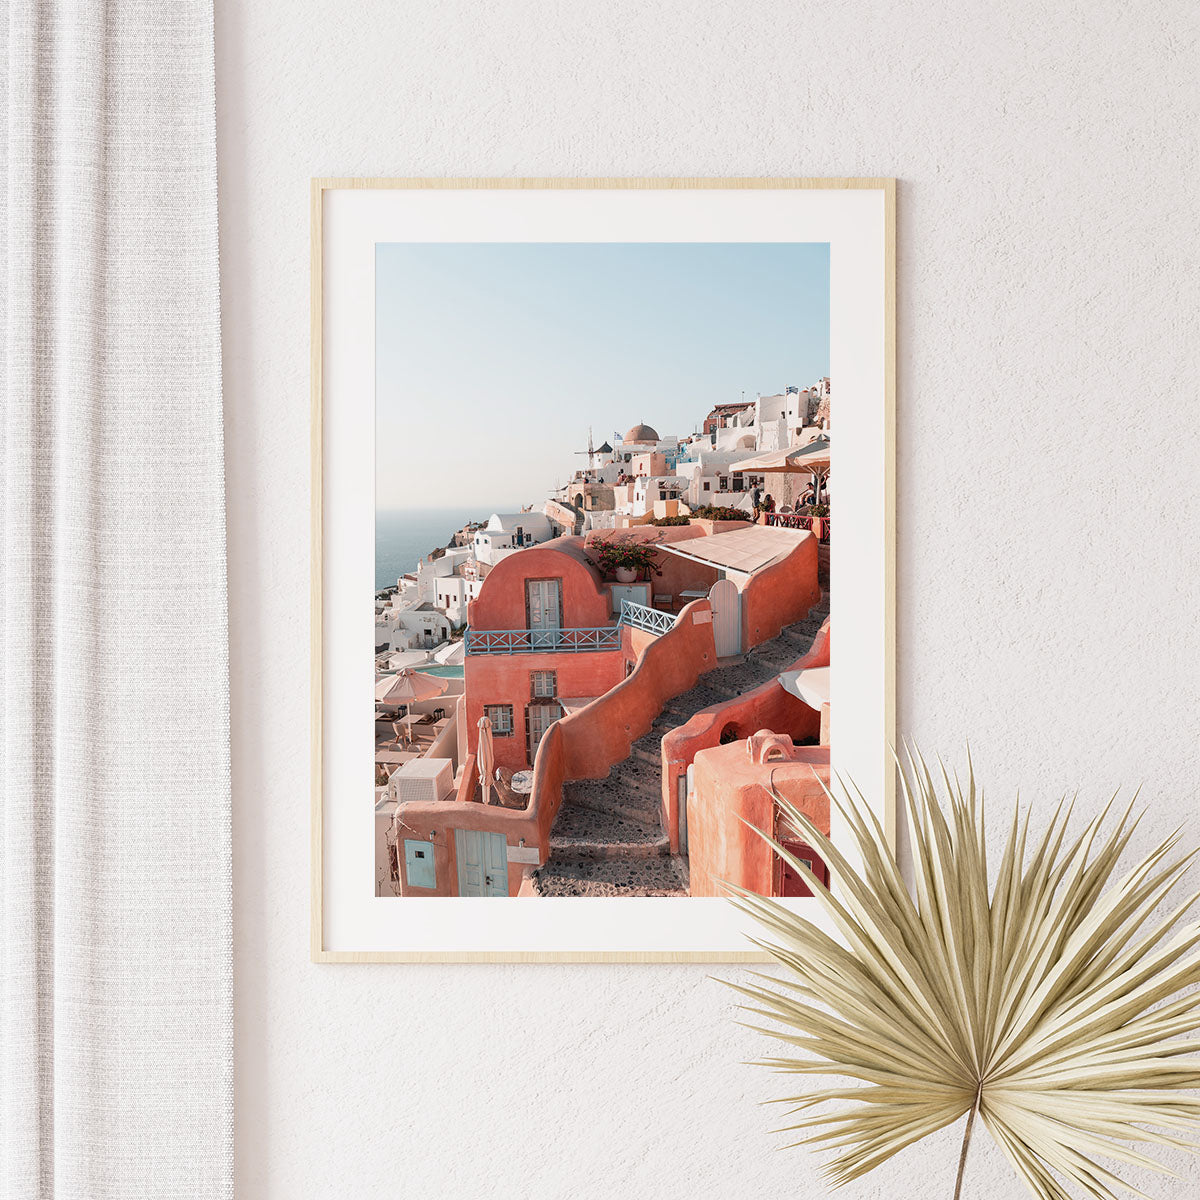 Framed print of Santorini houses